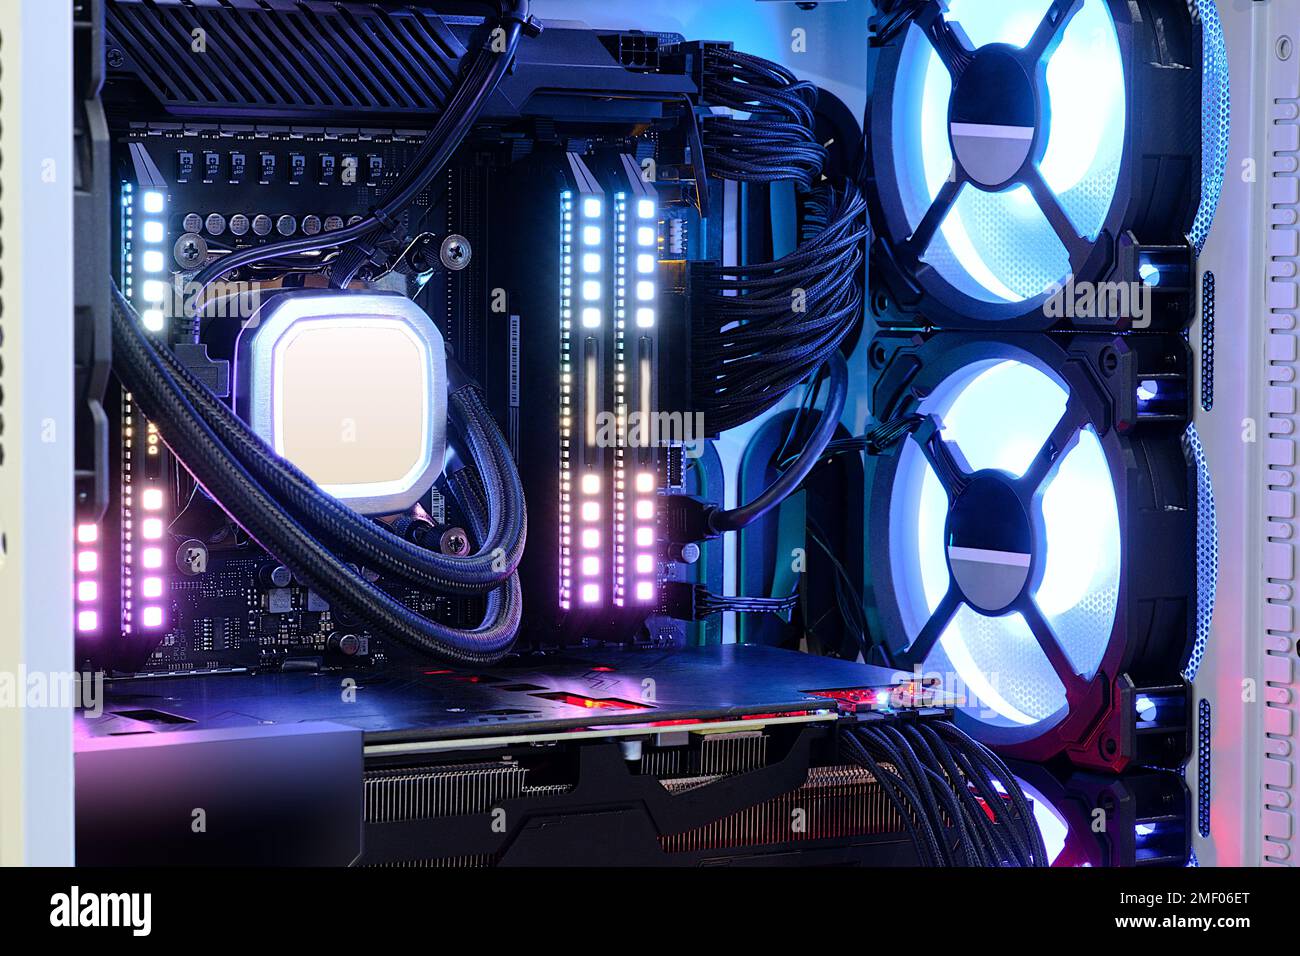 Gros plan et intérieur PC de bureau haute performance et système de refroidissement sur socket CPU avec lumière LED multicolore indiquent l'état de fonctionnement Banque D'Images